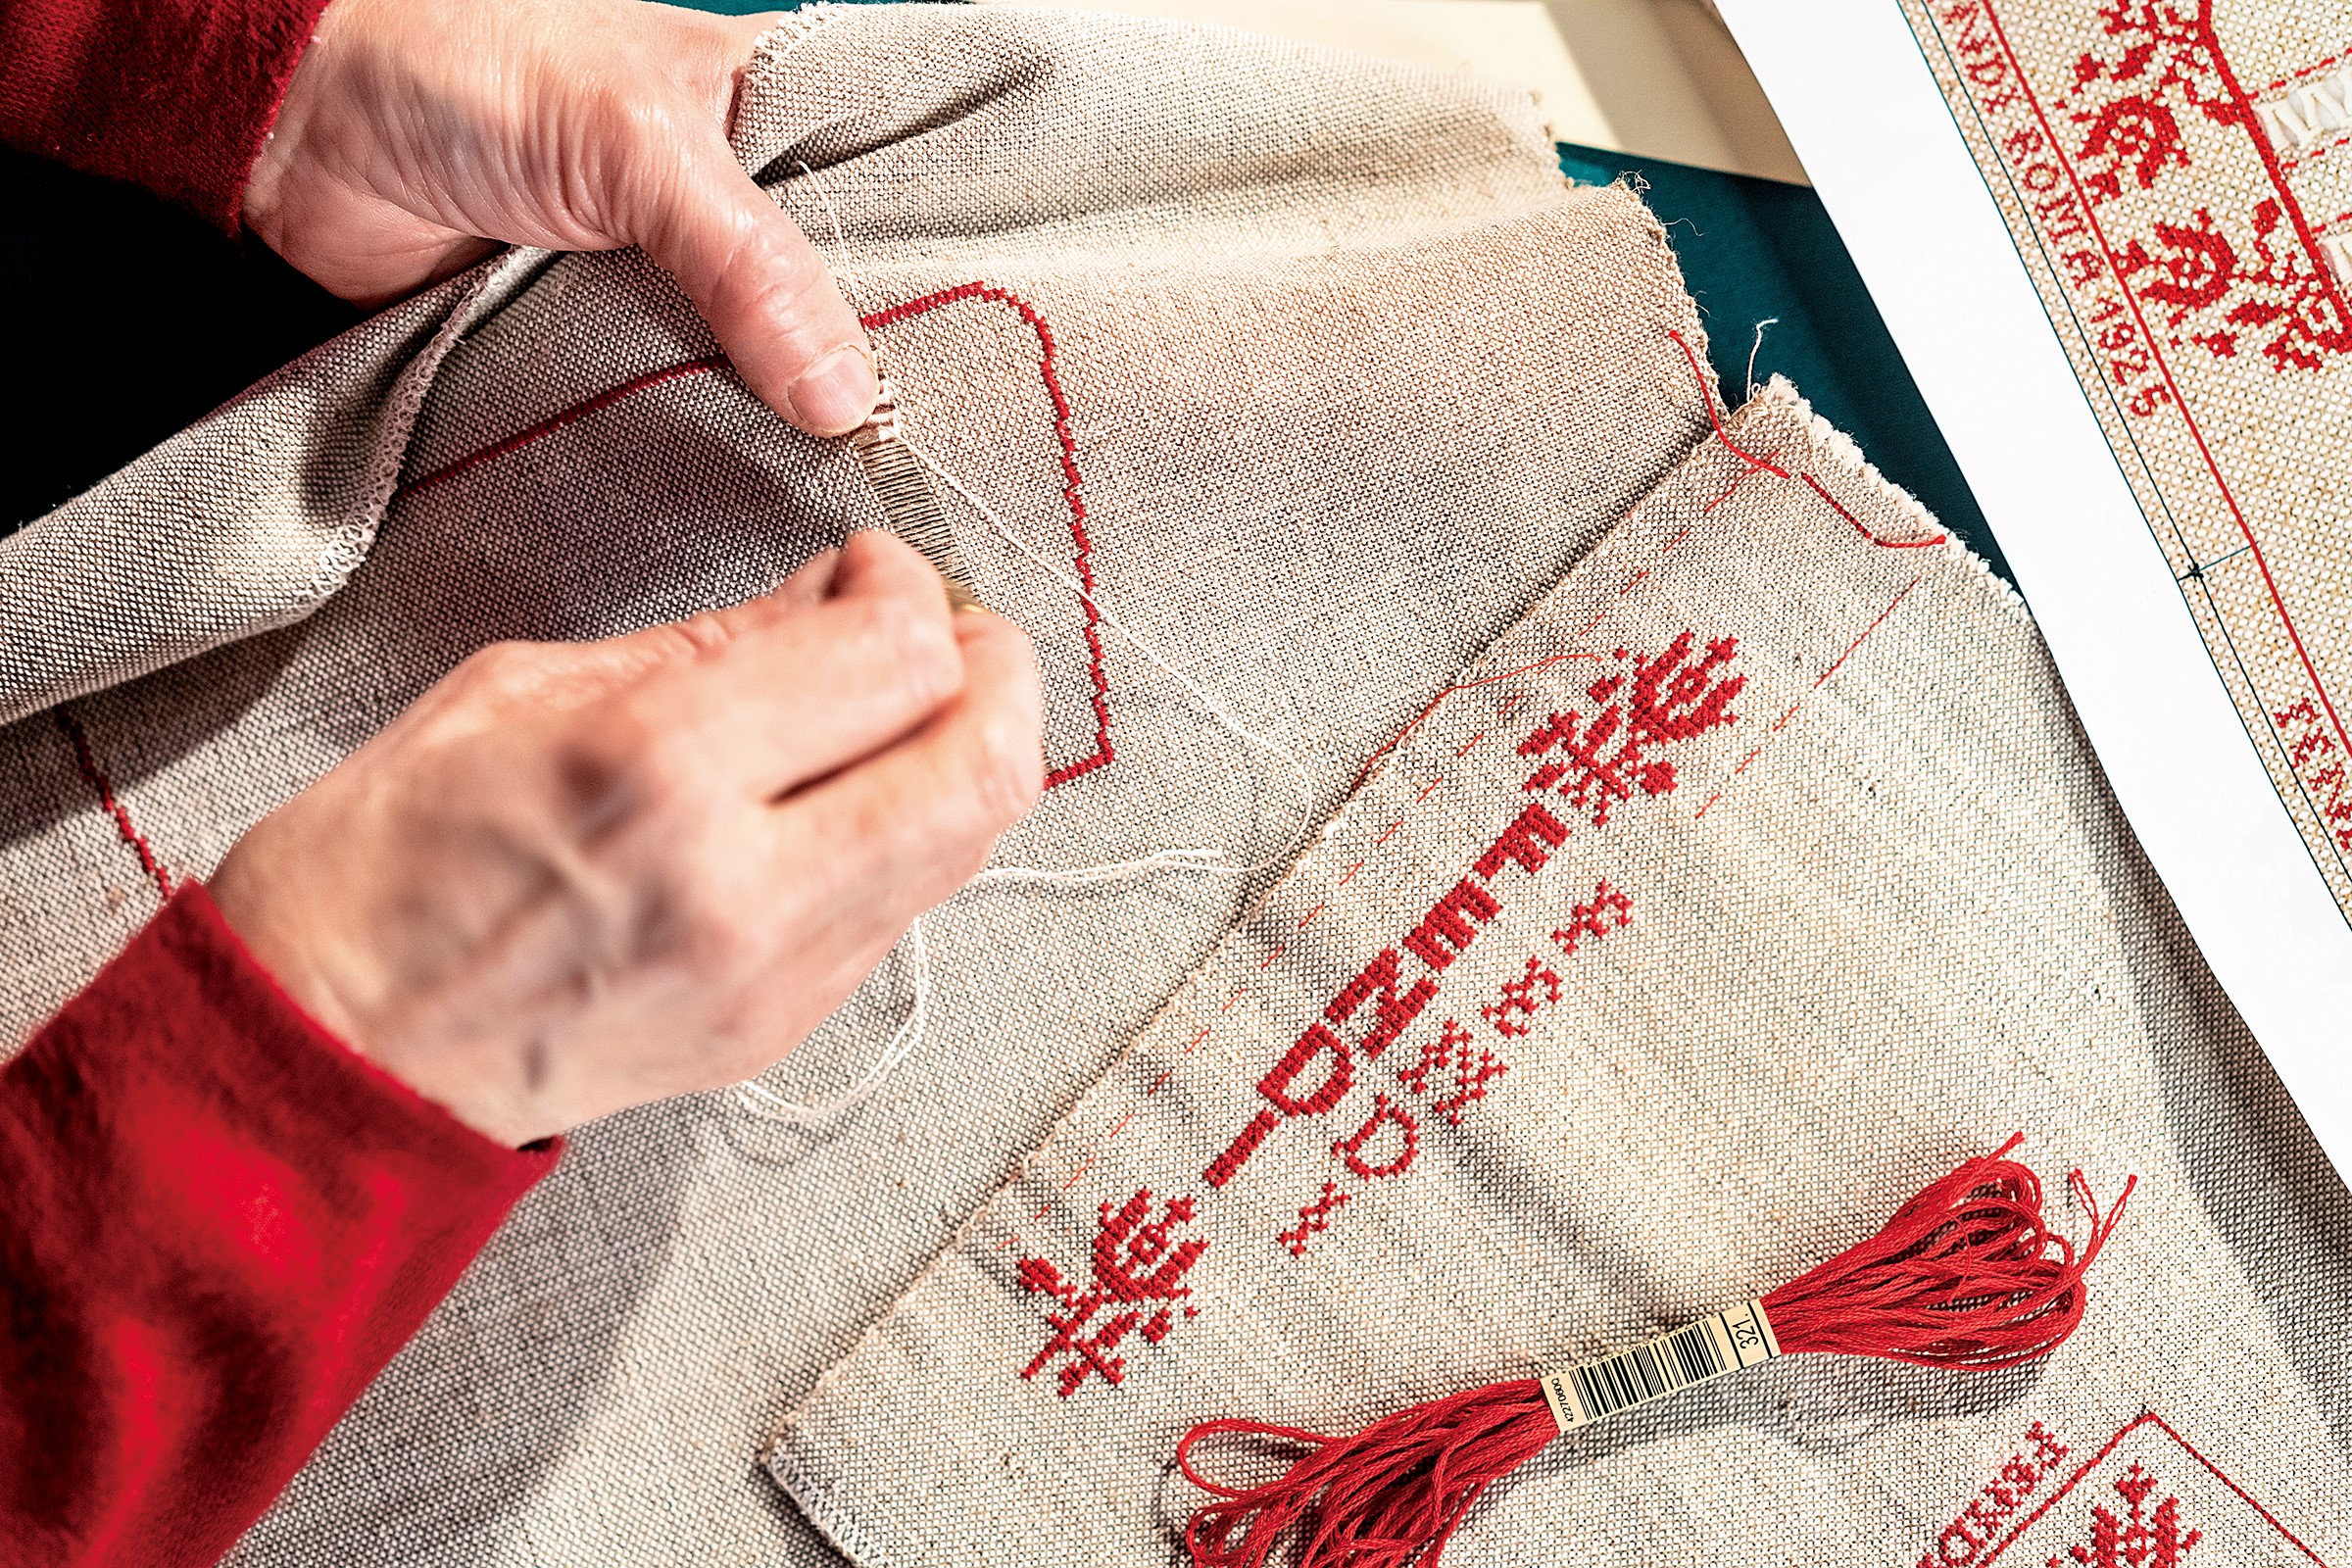 自 1989 年以來，義大利西北部瓦萊達奧斯塔大區阿歐斯塔谷山區的尚波爾謝小鎮，有個傳承類似十字繡傳統的 Lou Dzeut 婦女合作社。家族長老婦女們將未染色的耐用麻布繡上傳統紅色圖案，並透過數字和字母的紀錄把這門手藝確實教給下一代。在本次計劃中，Fendi 著名的「Pequin」條紋圖案與傳統 Valdostan 花邊洞眼交織的畫面，訴說著 Baguette 包將成為該工藝的傳承主體，持續在時尚與織品的世界中活躍著。